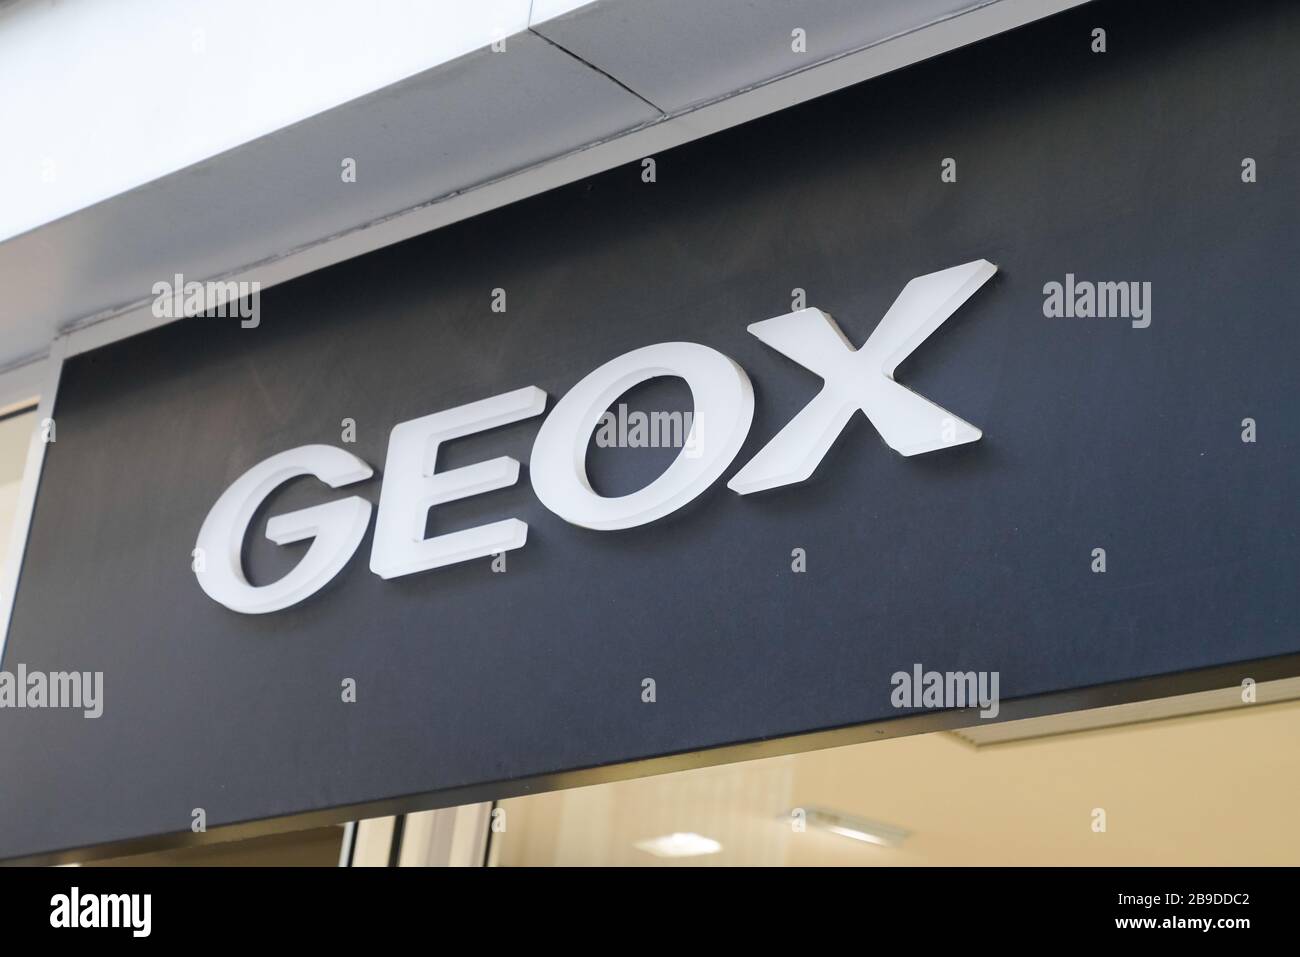 Tienda geox fotografías e imágenes de alta Página 2 - Alamy